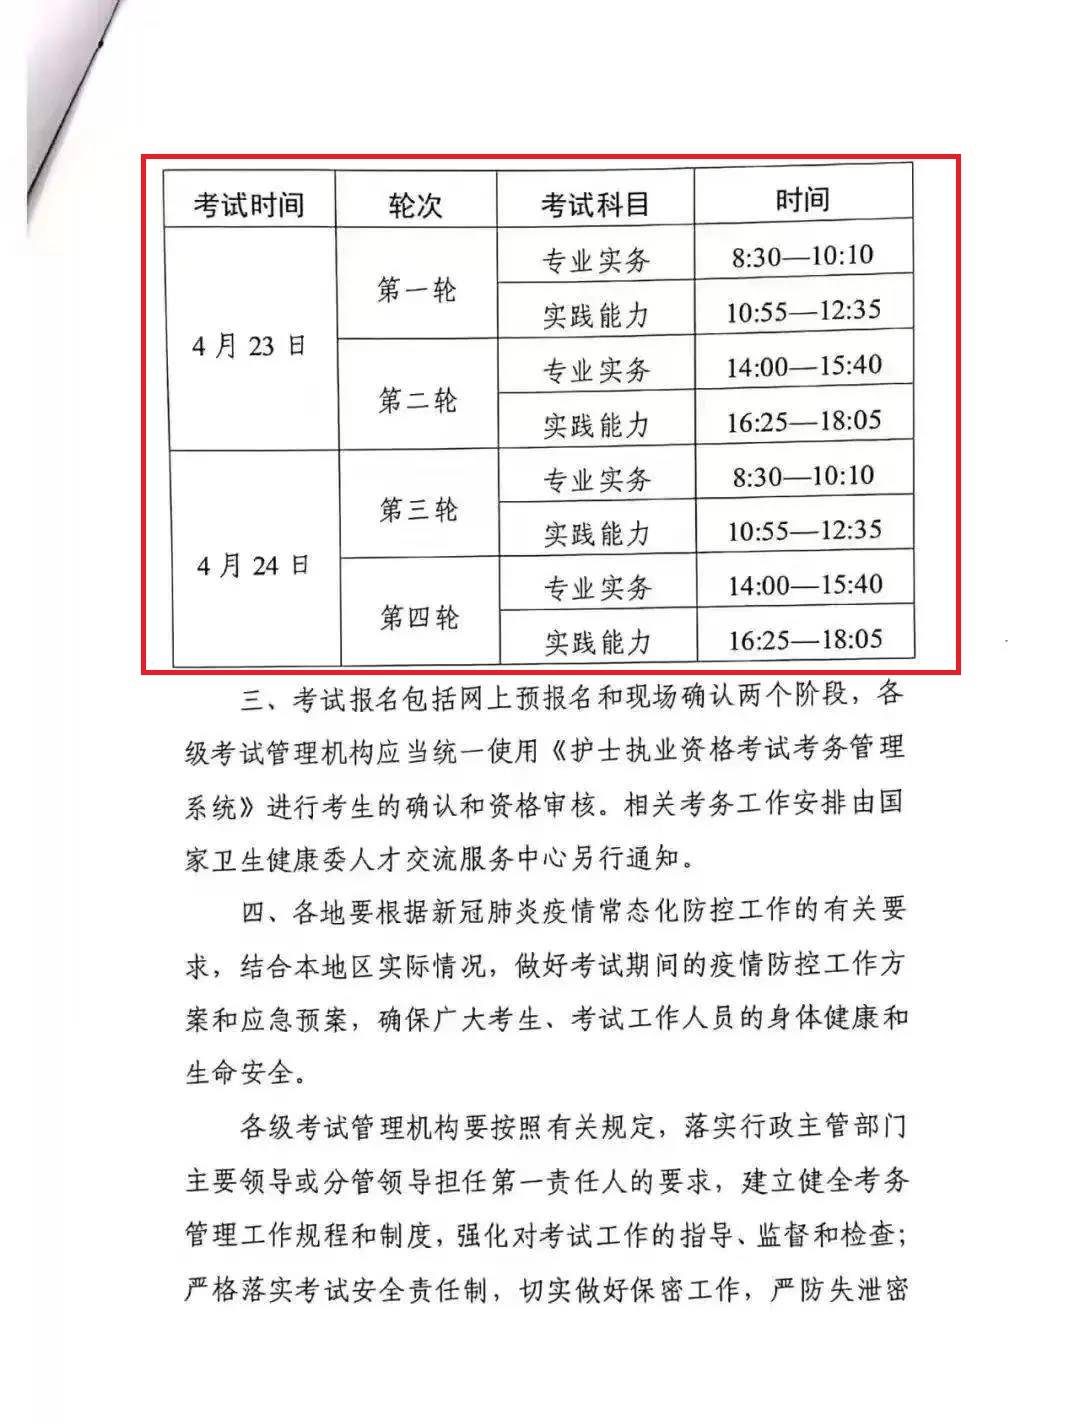 据中国卫生人才网官方消息 2022年护考报名时间 2021年12月8日开始